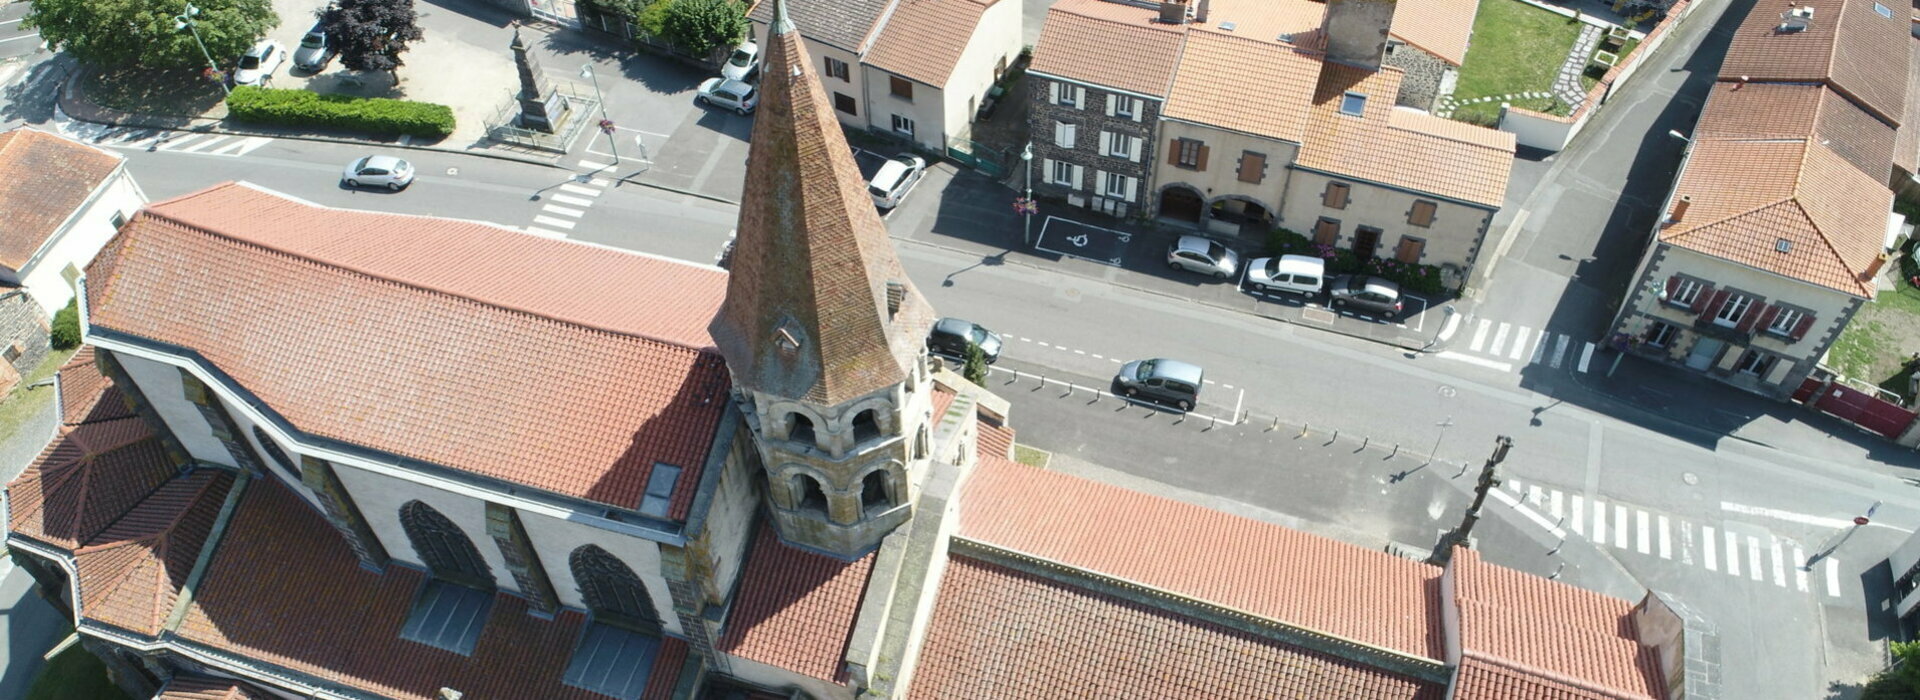 Ennezat (Puy-de-Dome) SITE OFFICIEL